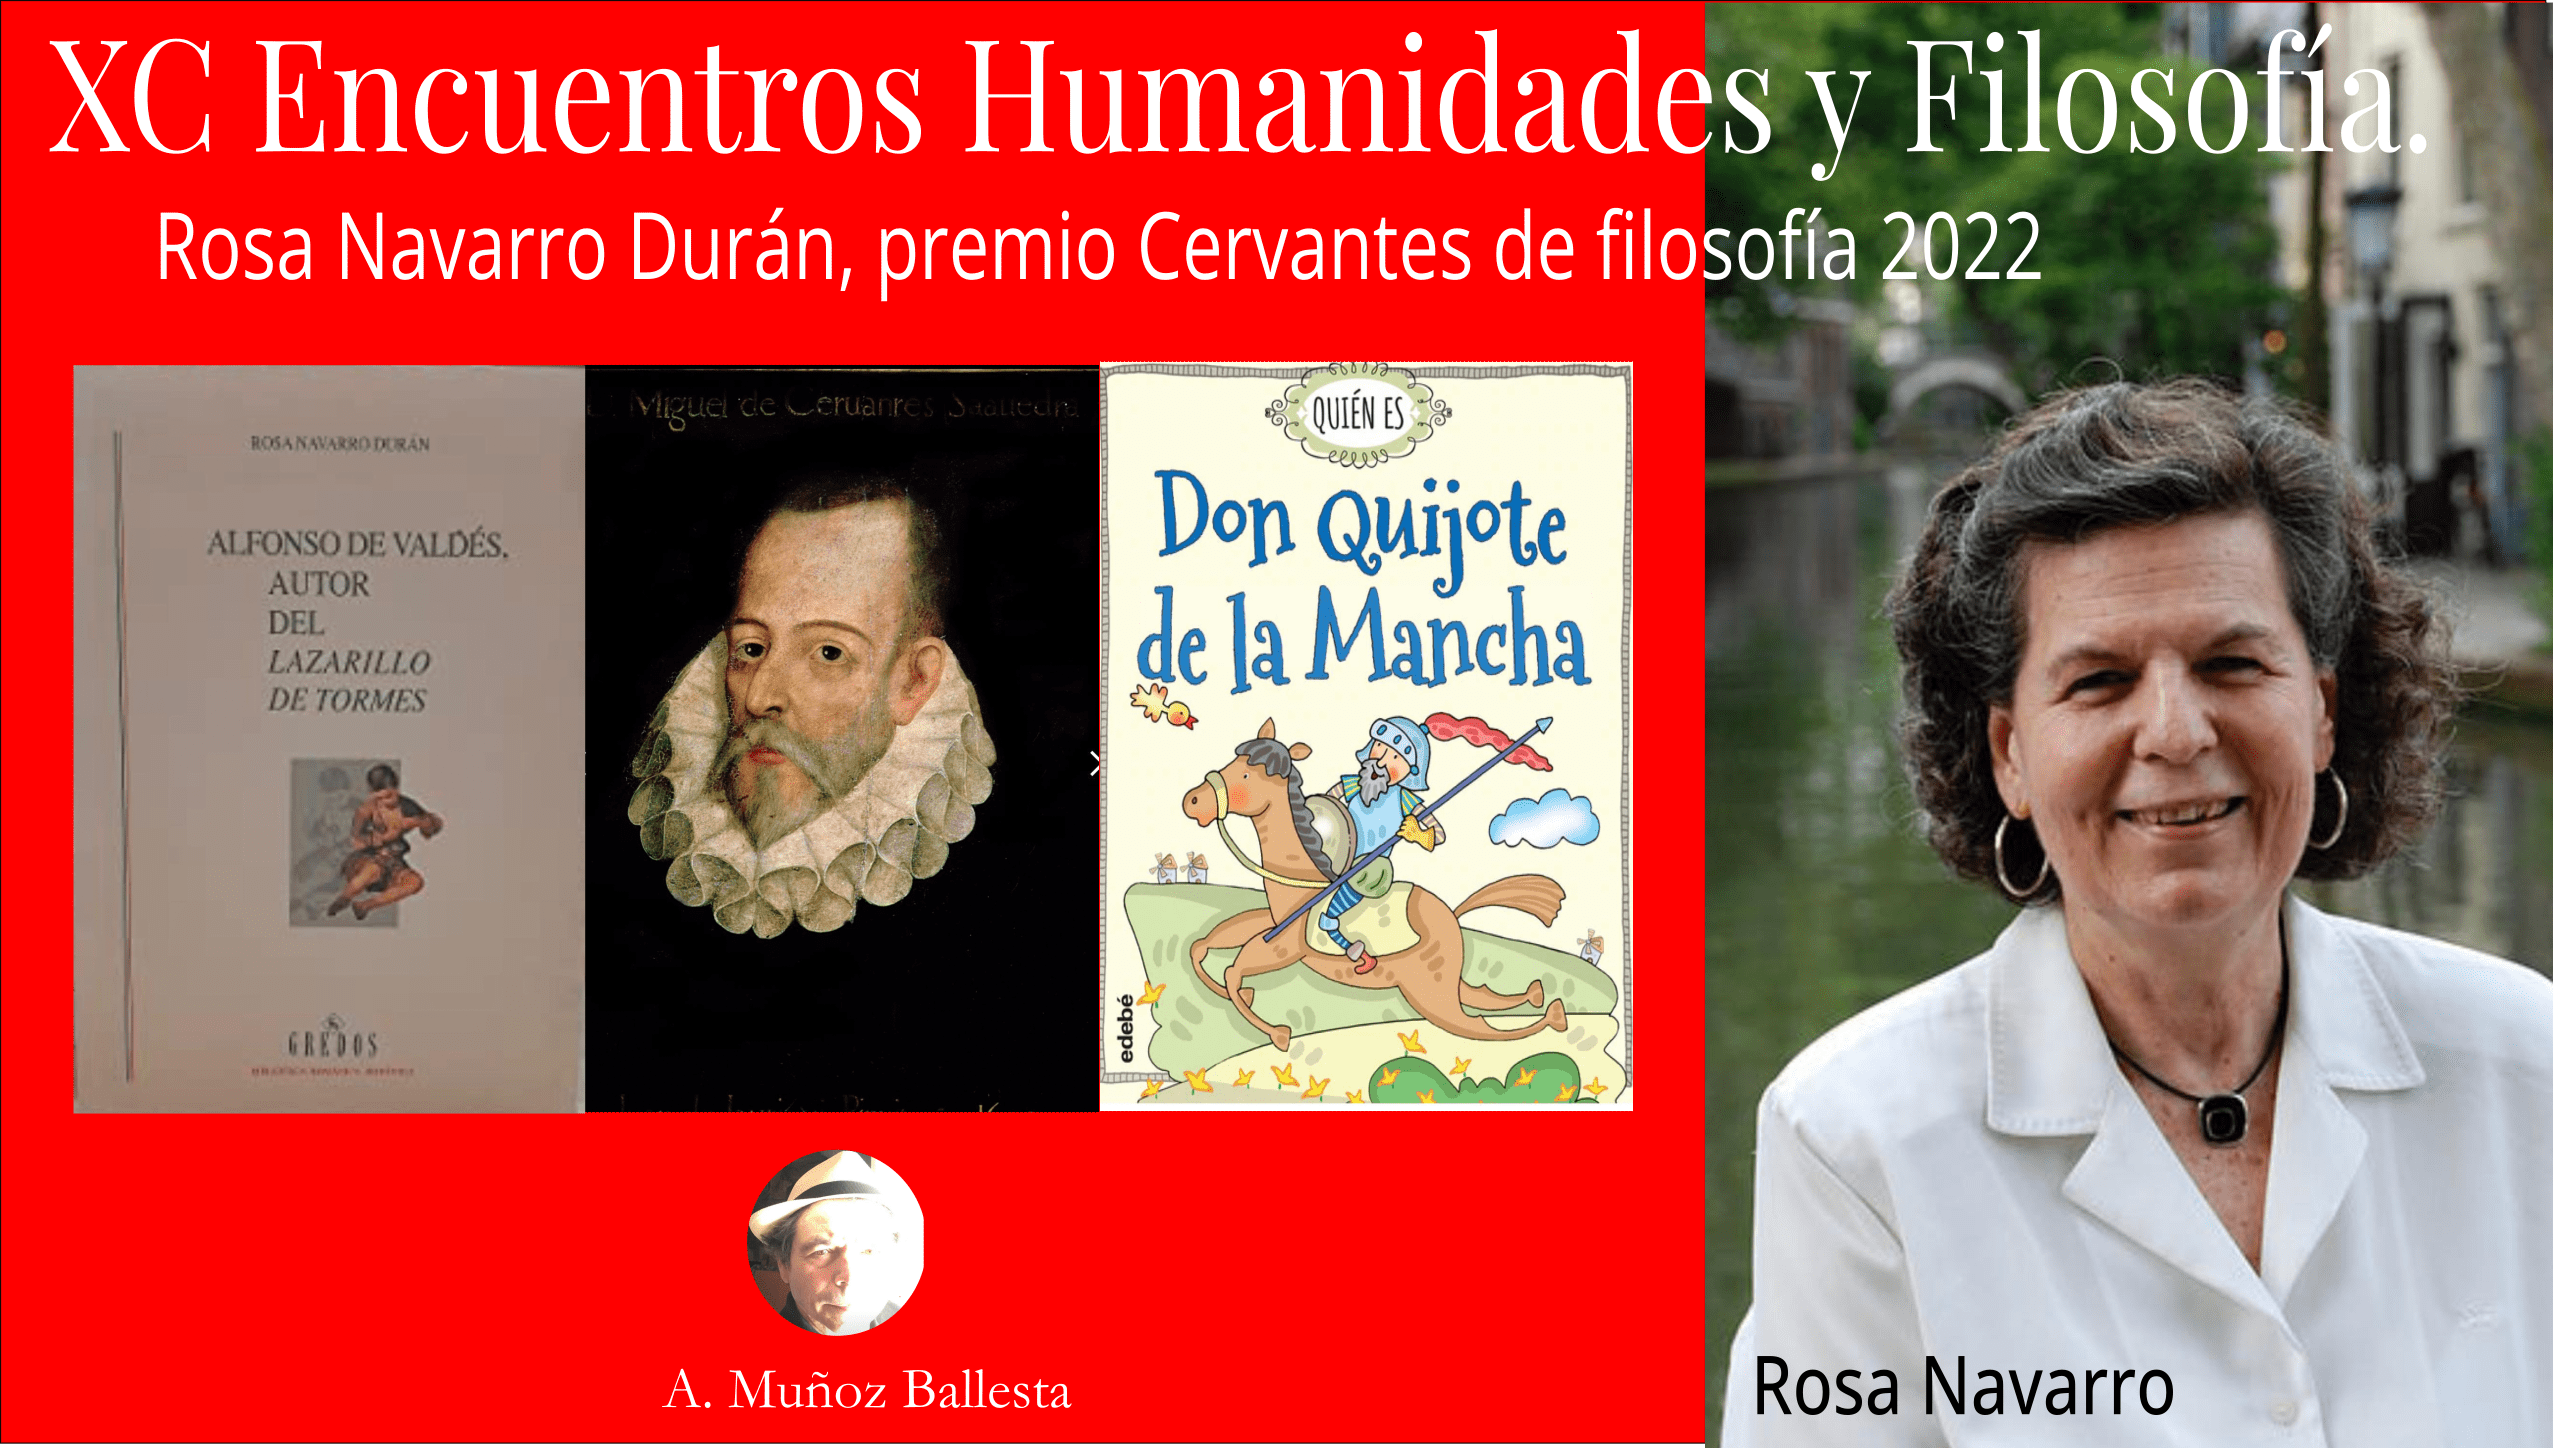  XC Encuentro Humanidades y Filosofía, Rosa Navarro Durán, premio Cervantes de filosofía 2022